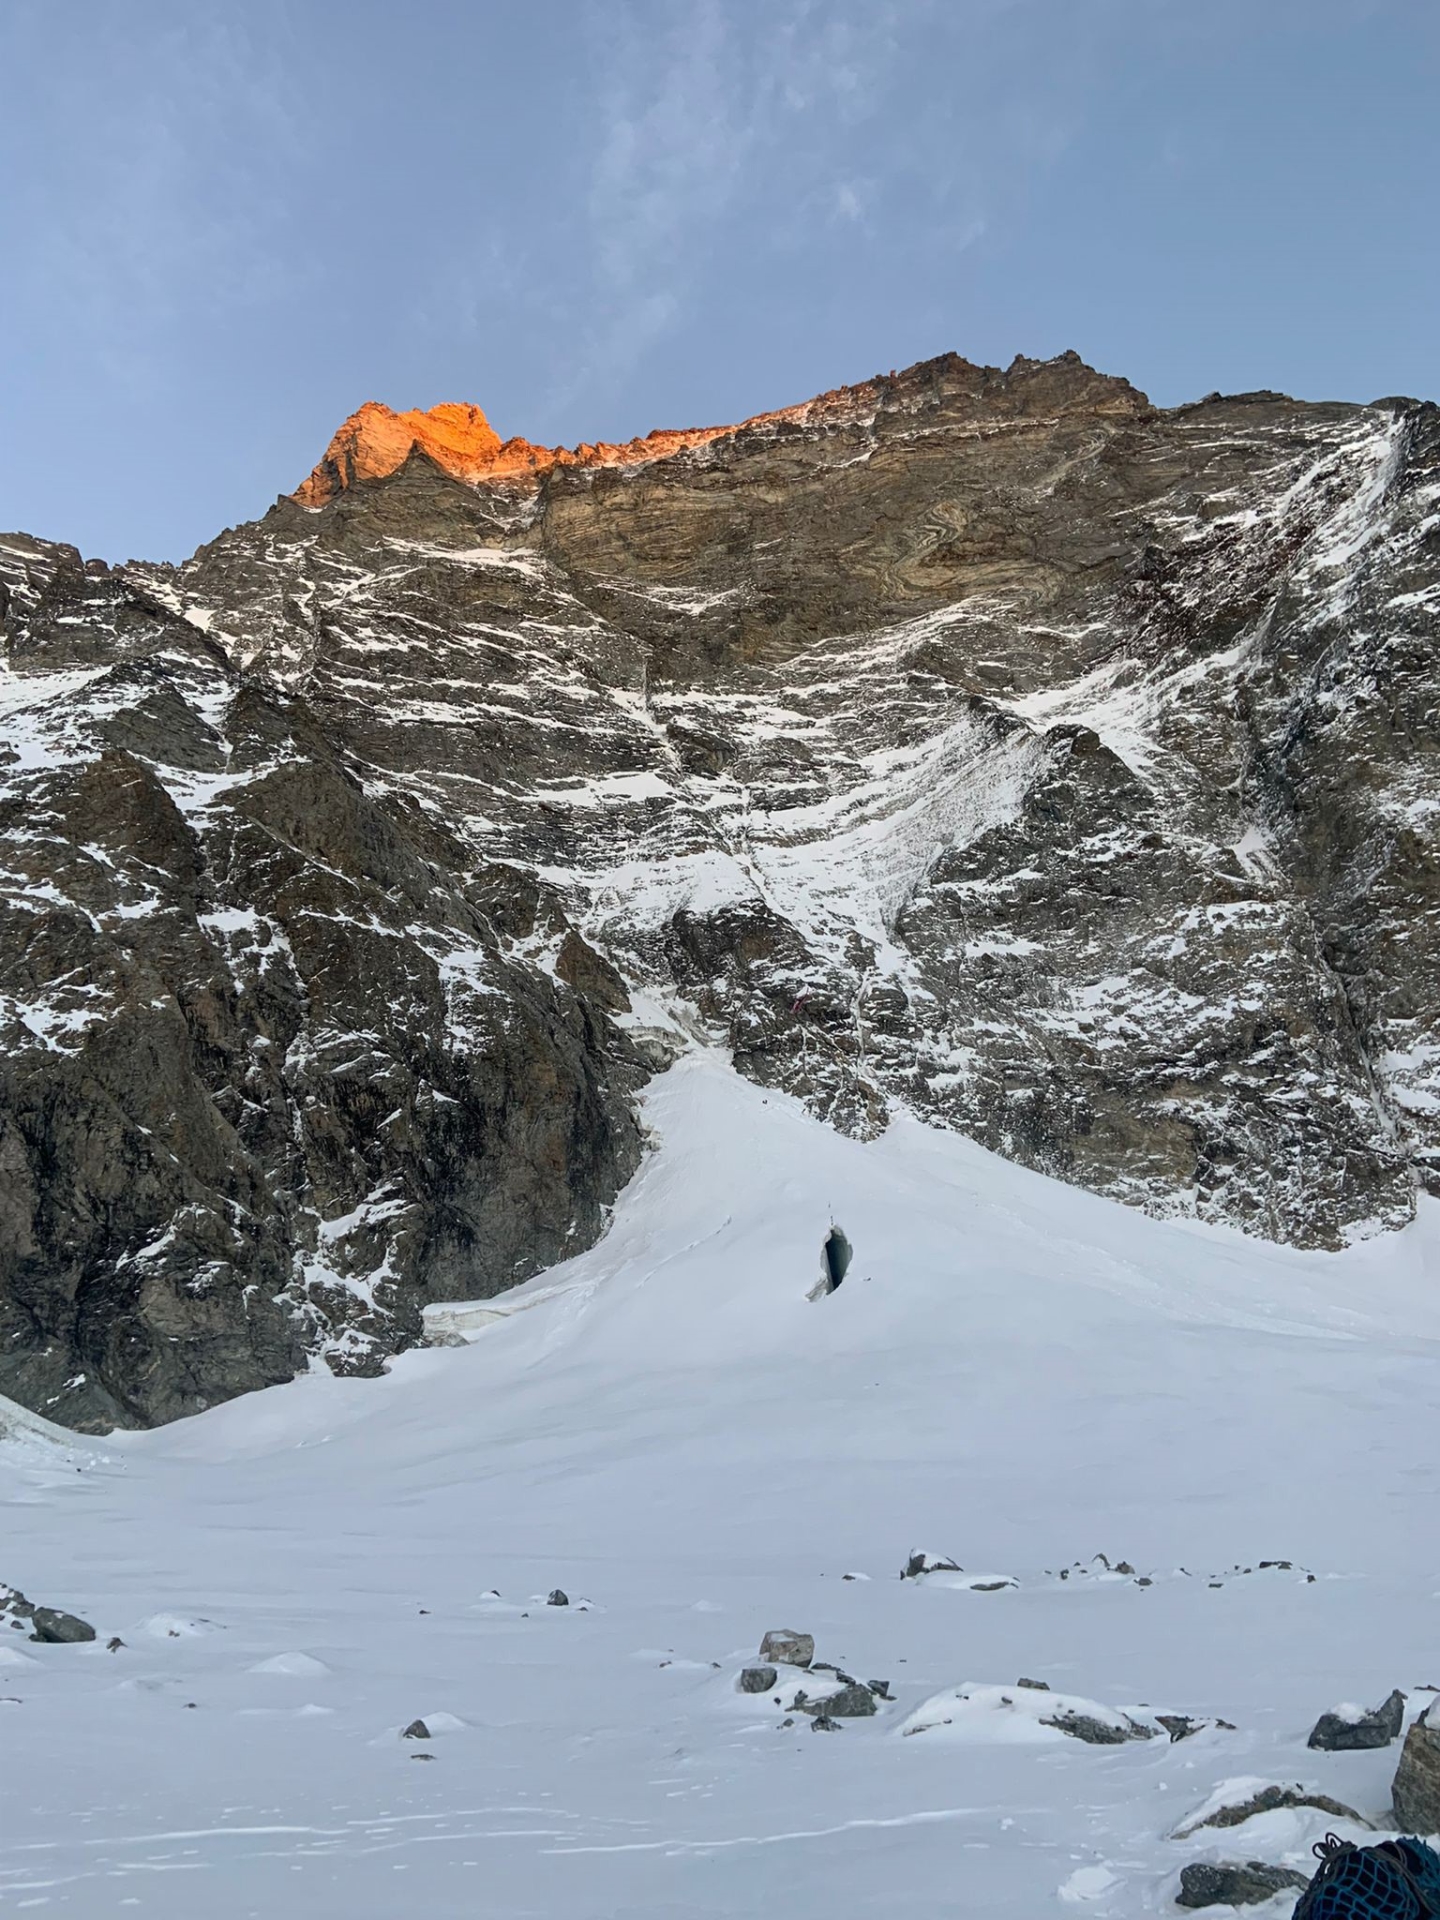 L'alpiniste effectuait l'ascension du Cervin par la face ouest.